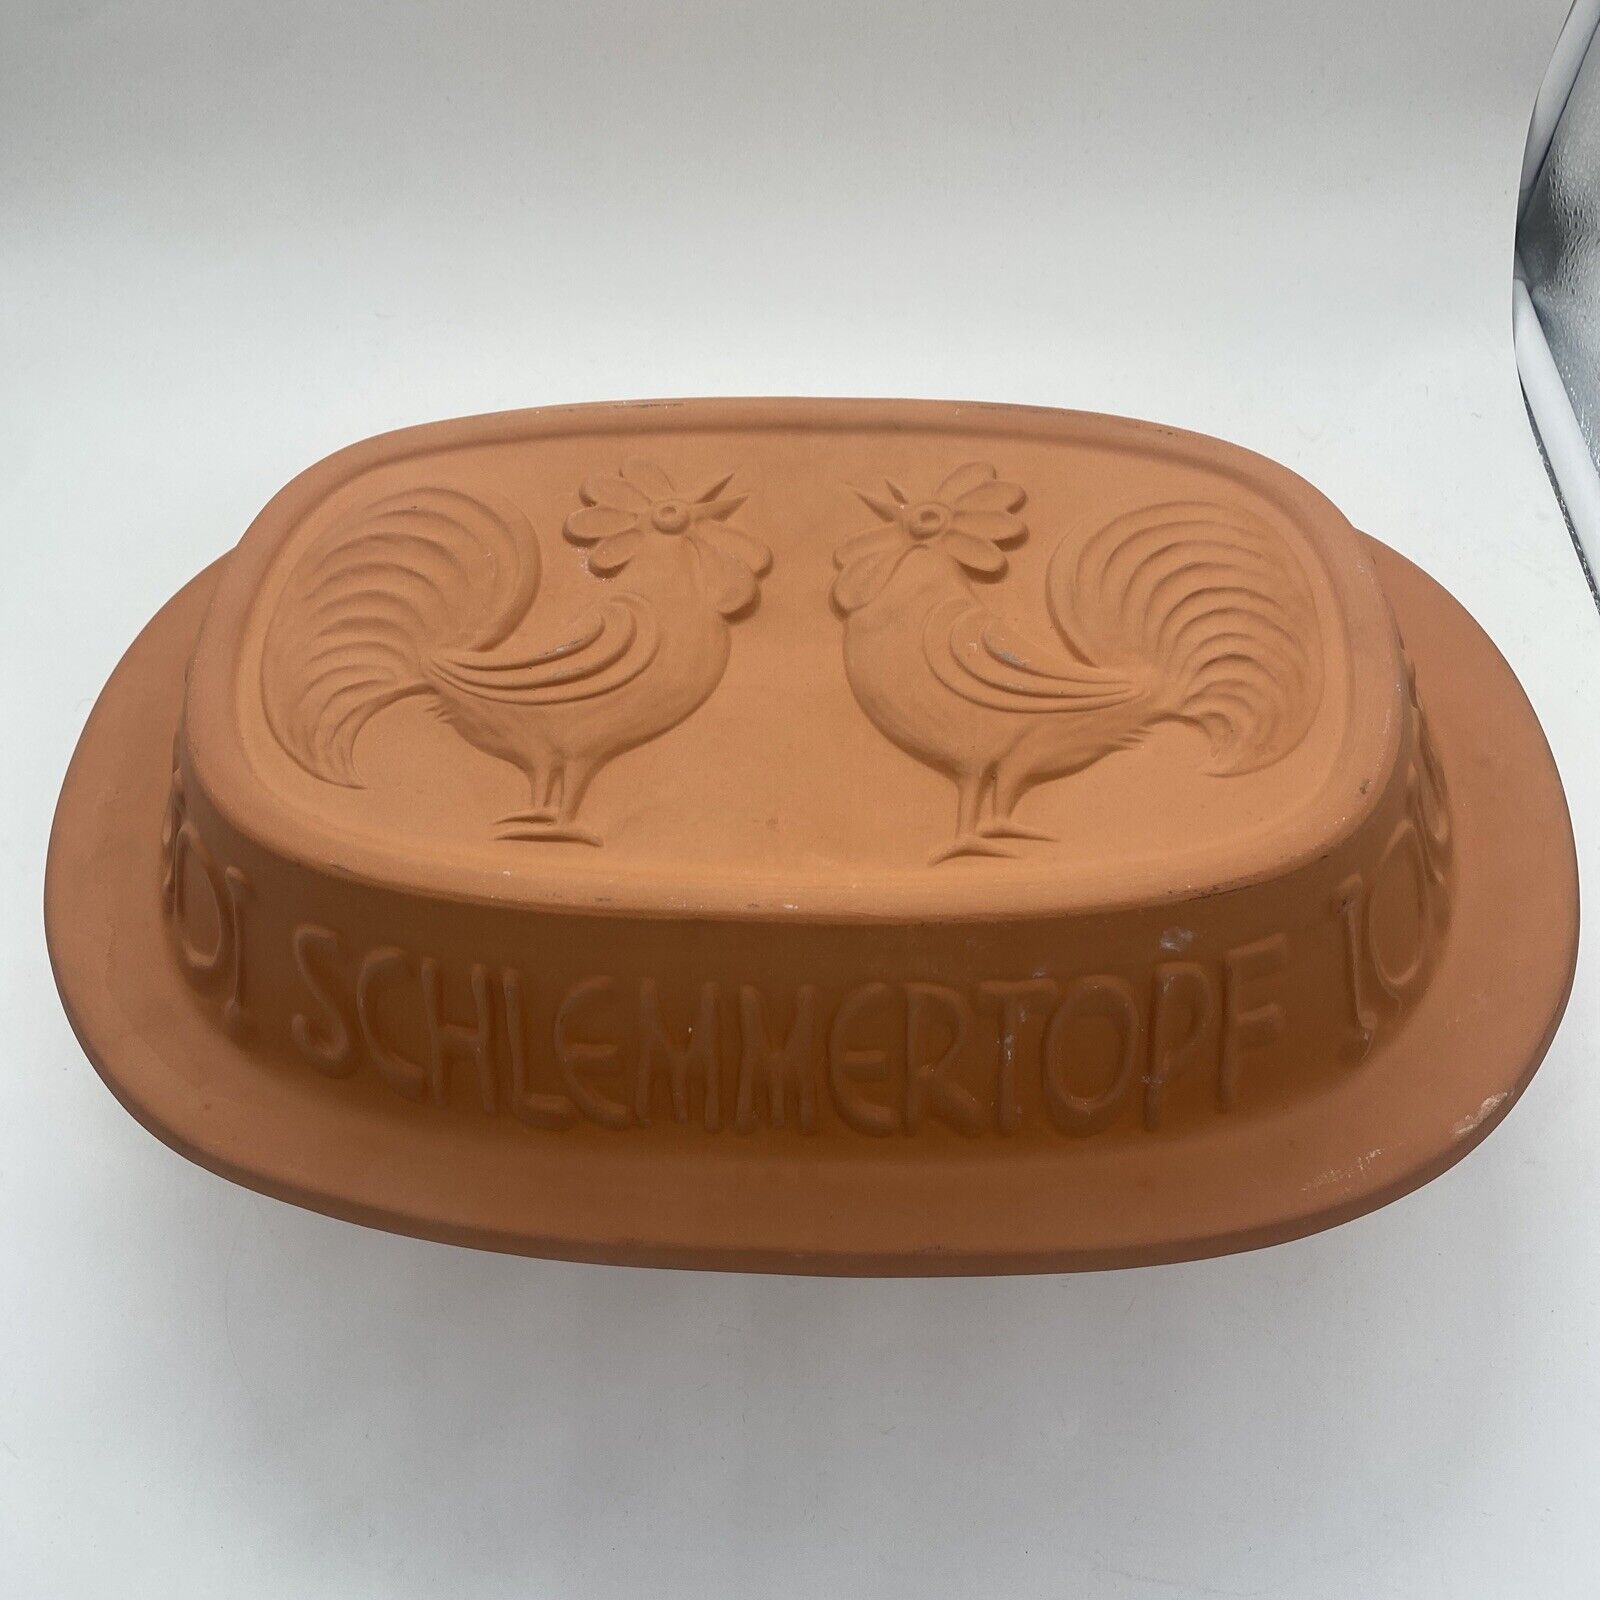 Vtg Schlemmertopf # 836 Clay Rooster Baker W. Germany Scheurich Keramik “Read”